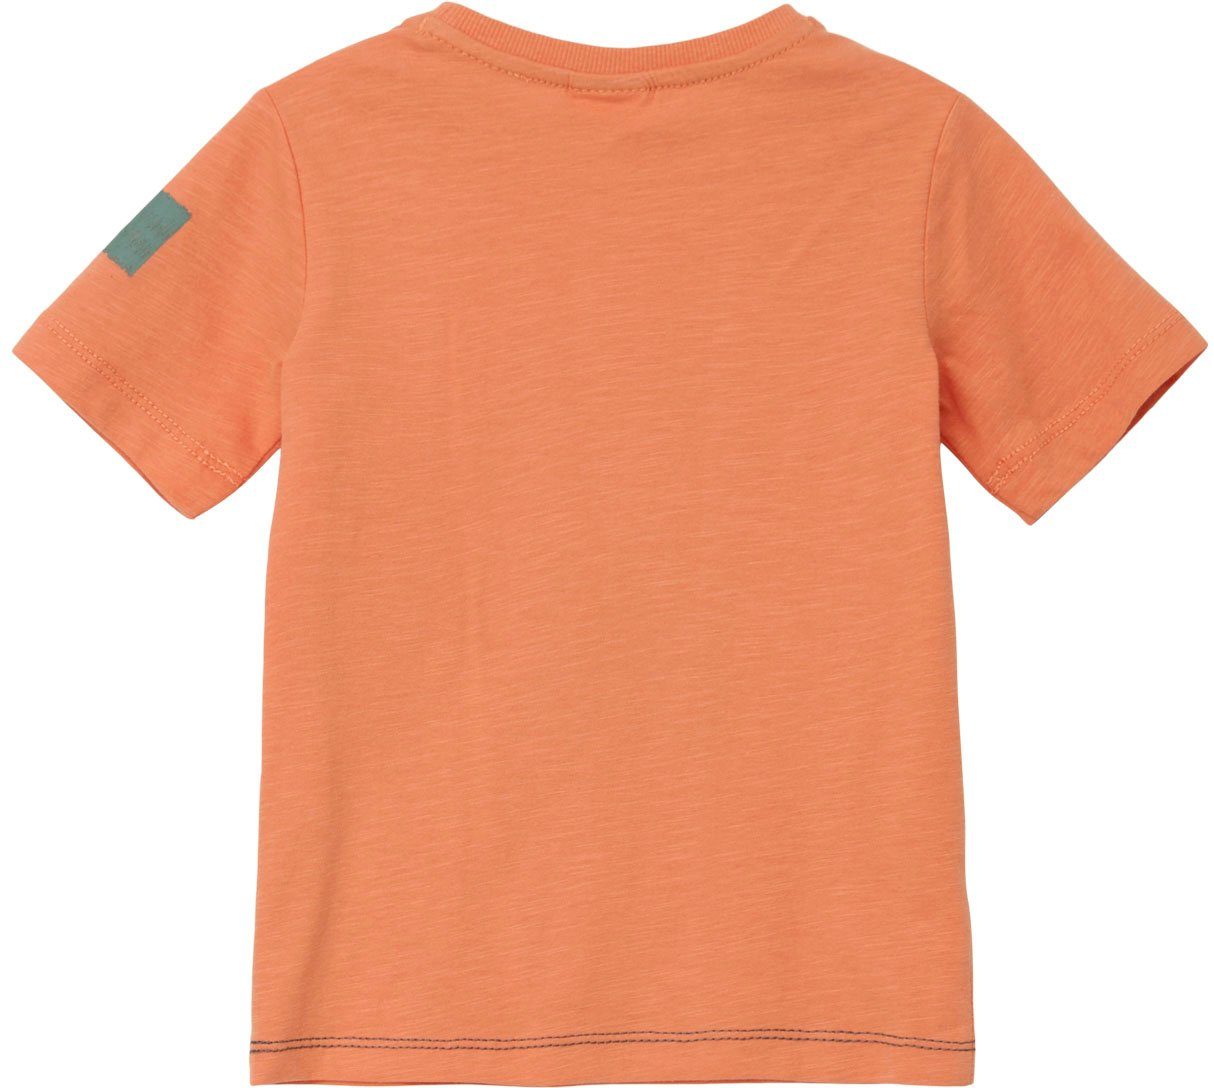 Arm am s.Oliver Junior T-Shirt Stickereien orange